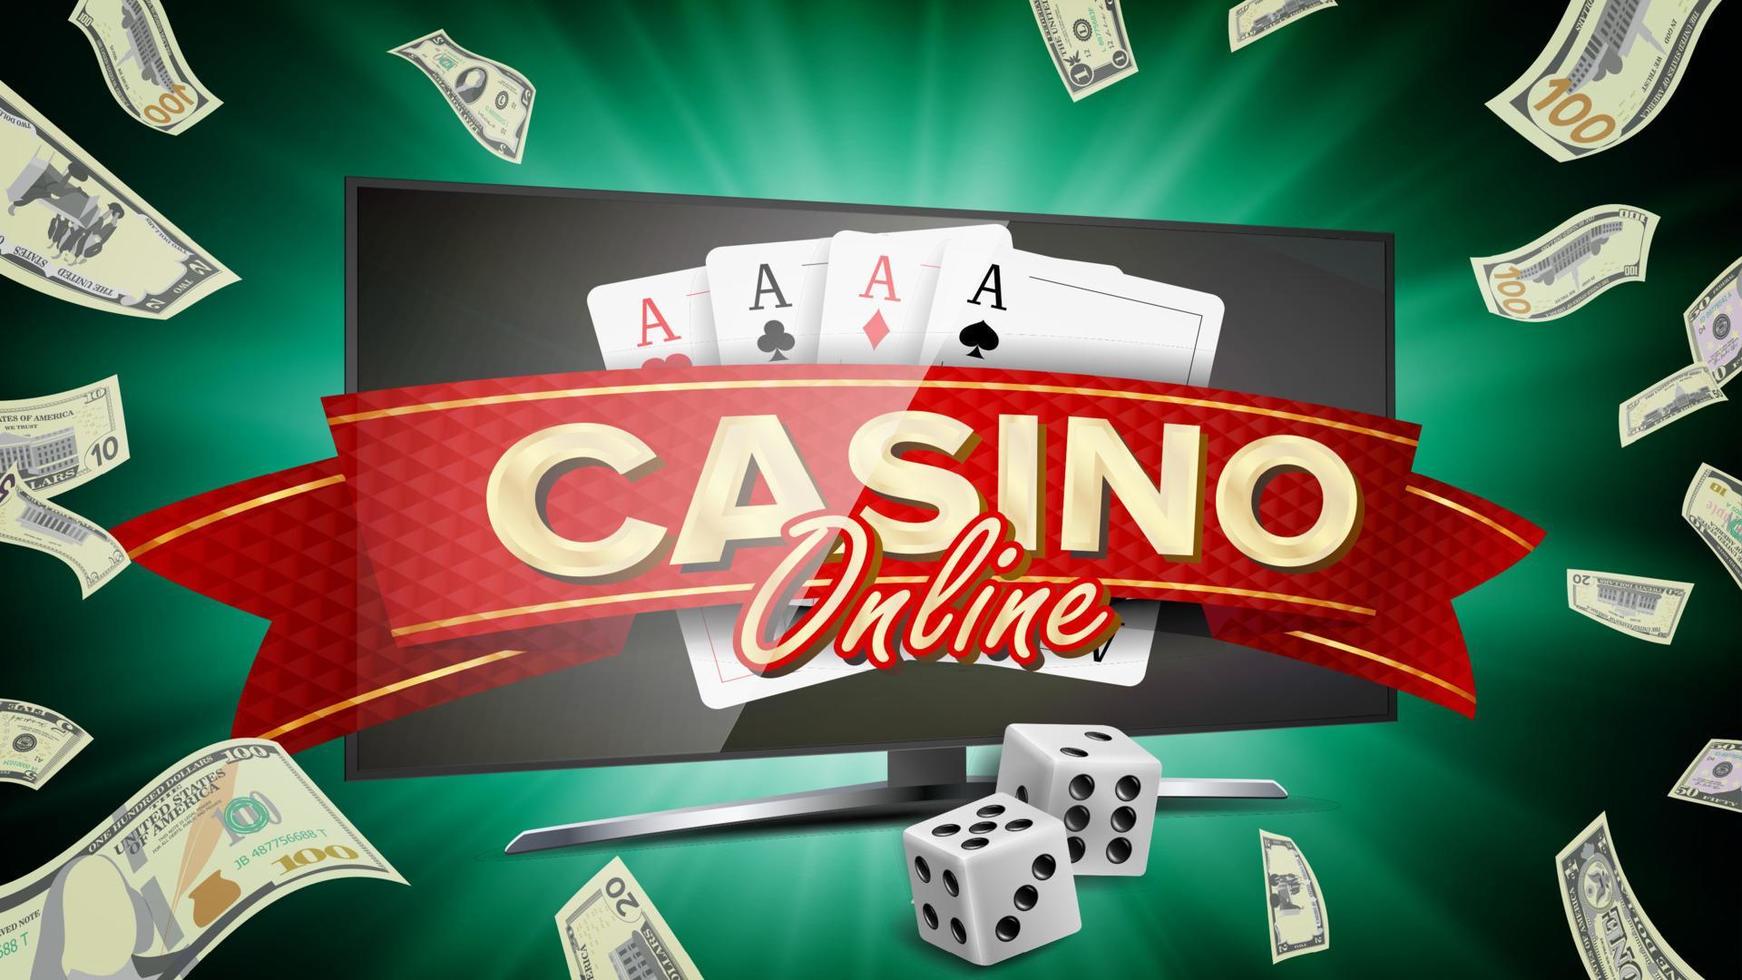 vector de banner de casino en línea. monitor de computadora realista. símbolo de la suerte del ganador. cartelera de casino jackpot, señalización, ilustración de carteles de lujo de marketing.